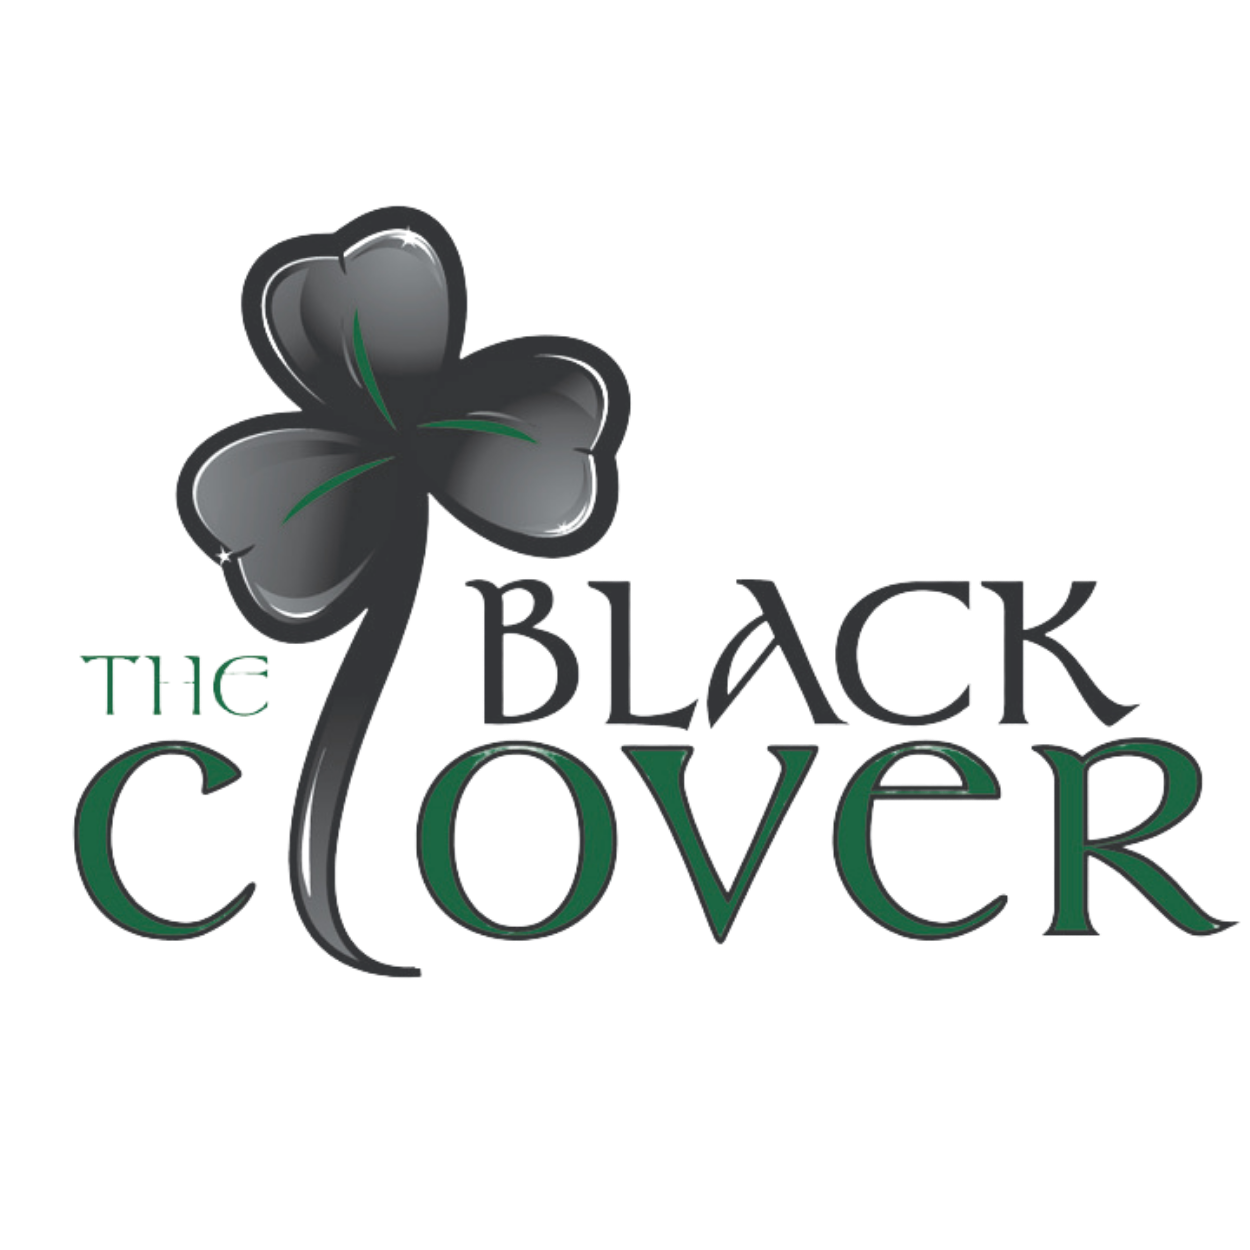 The Black Clover Irish Pub